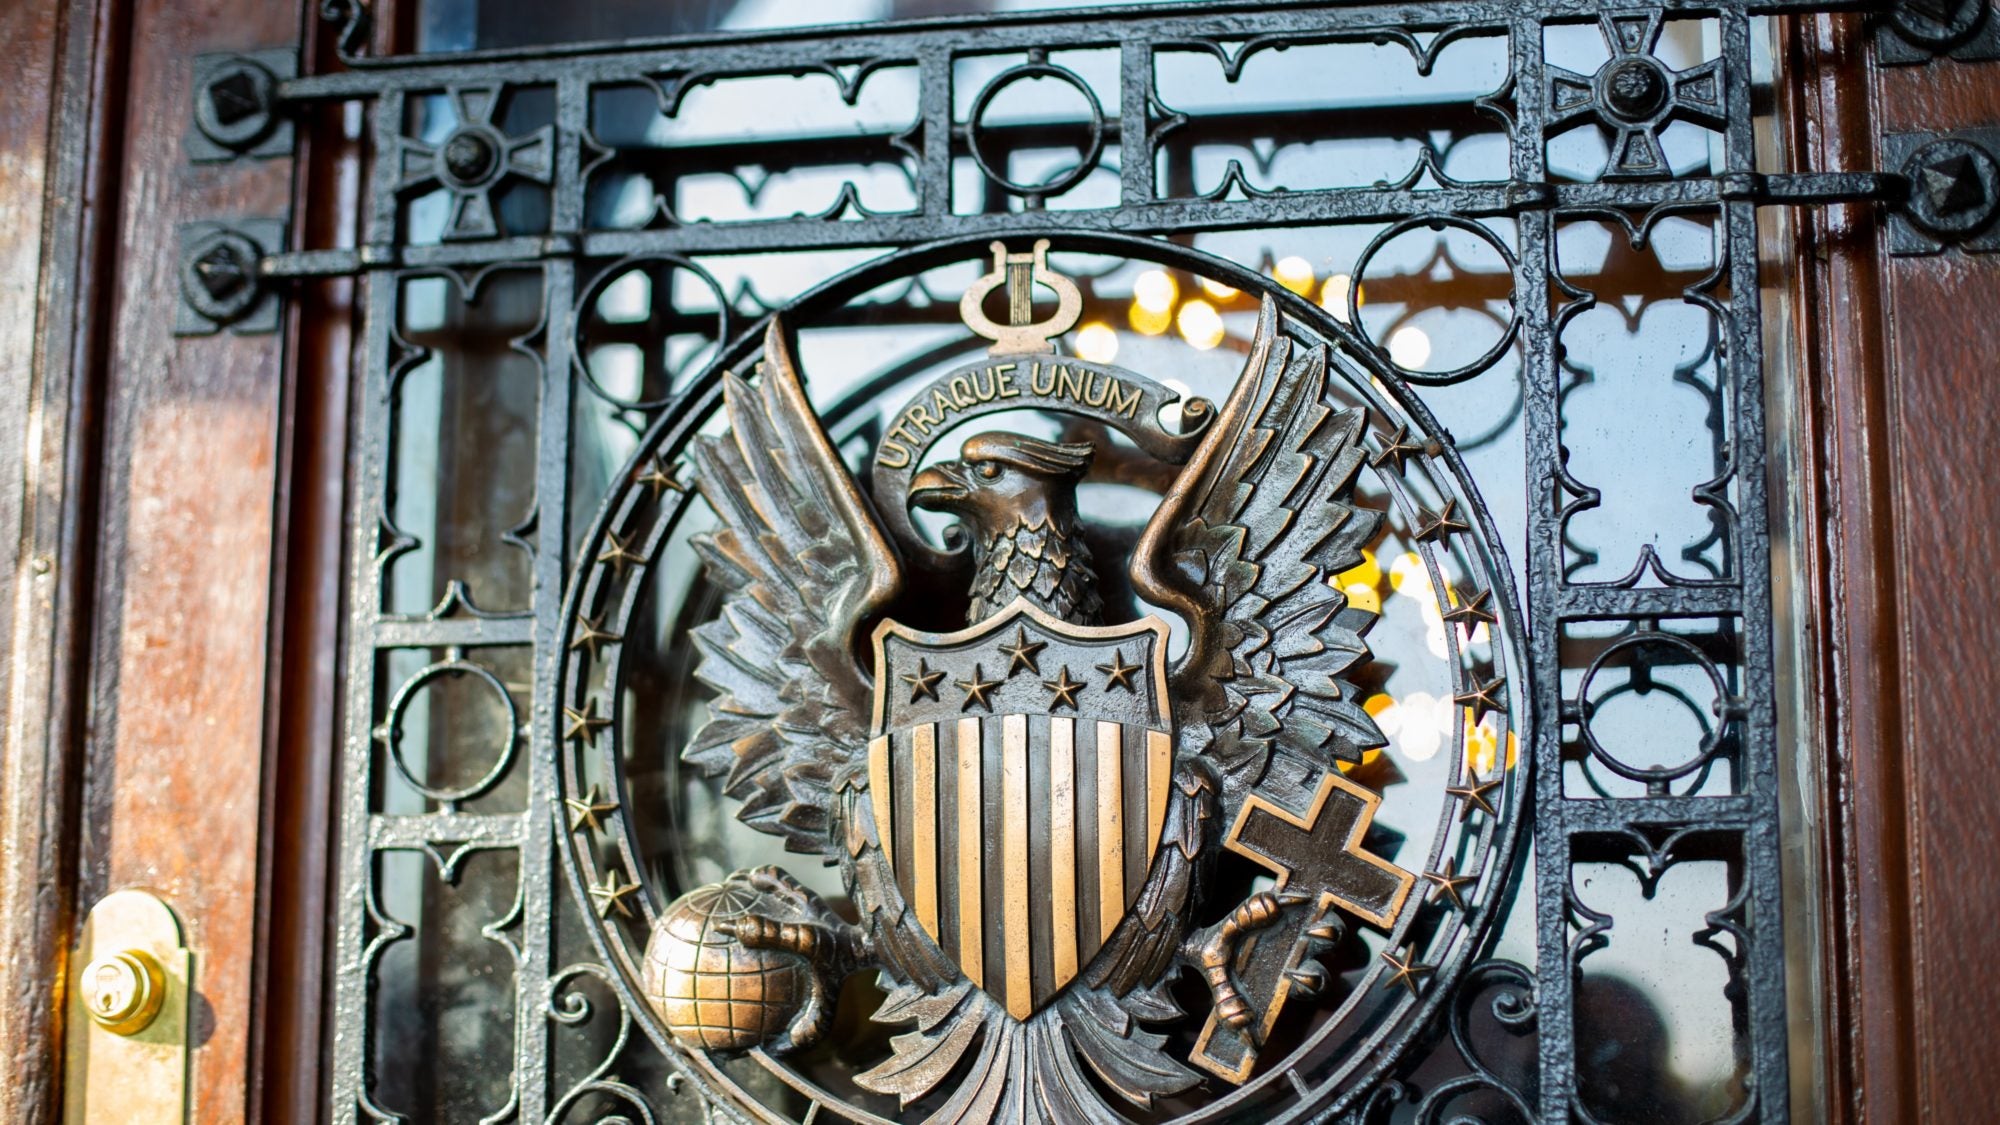 Georgetown seal on doors